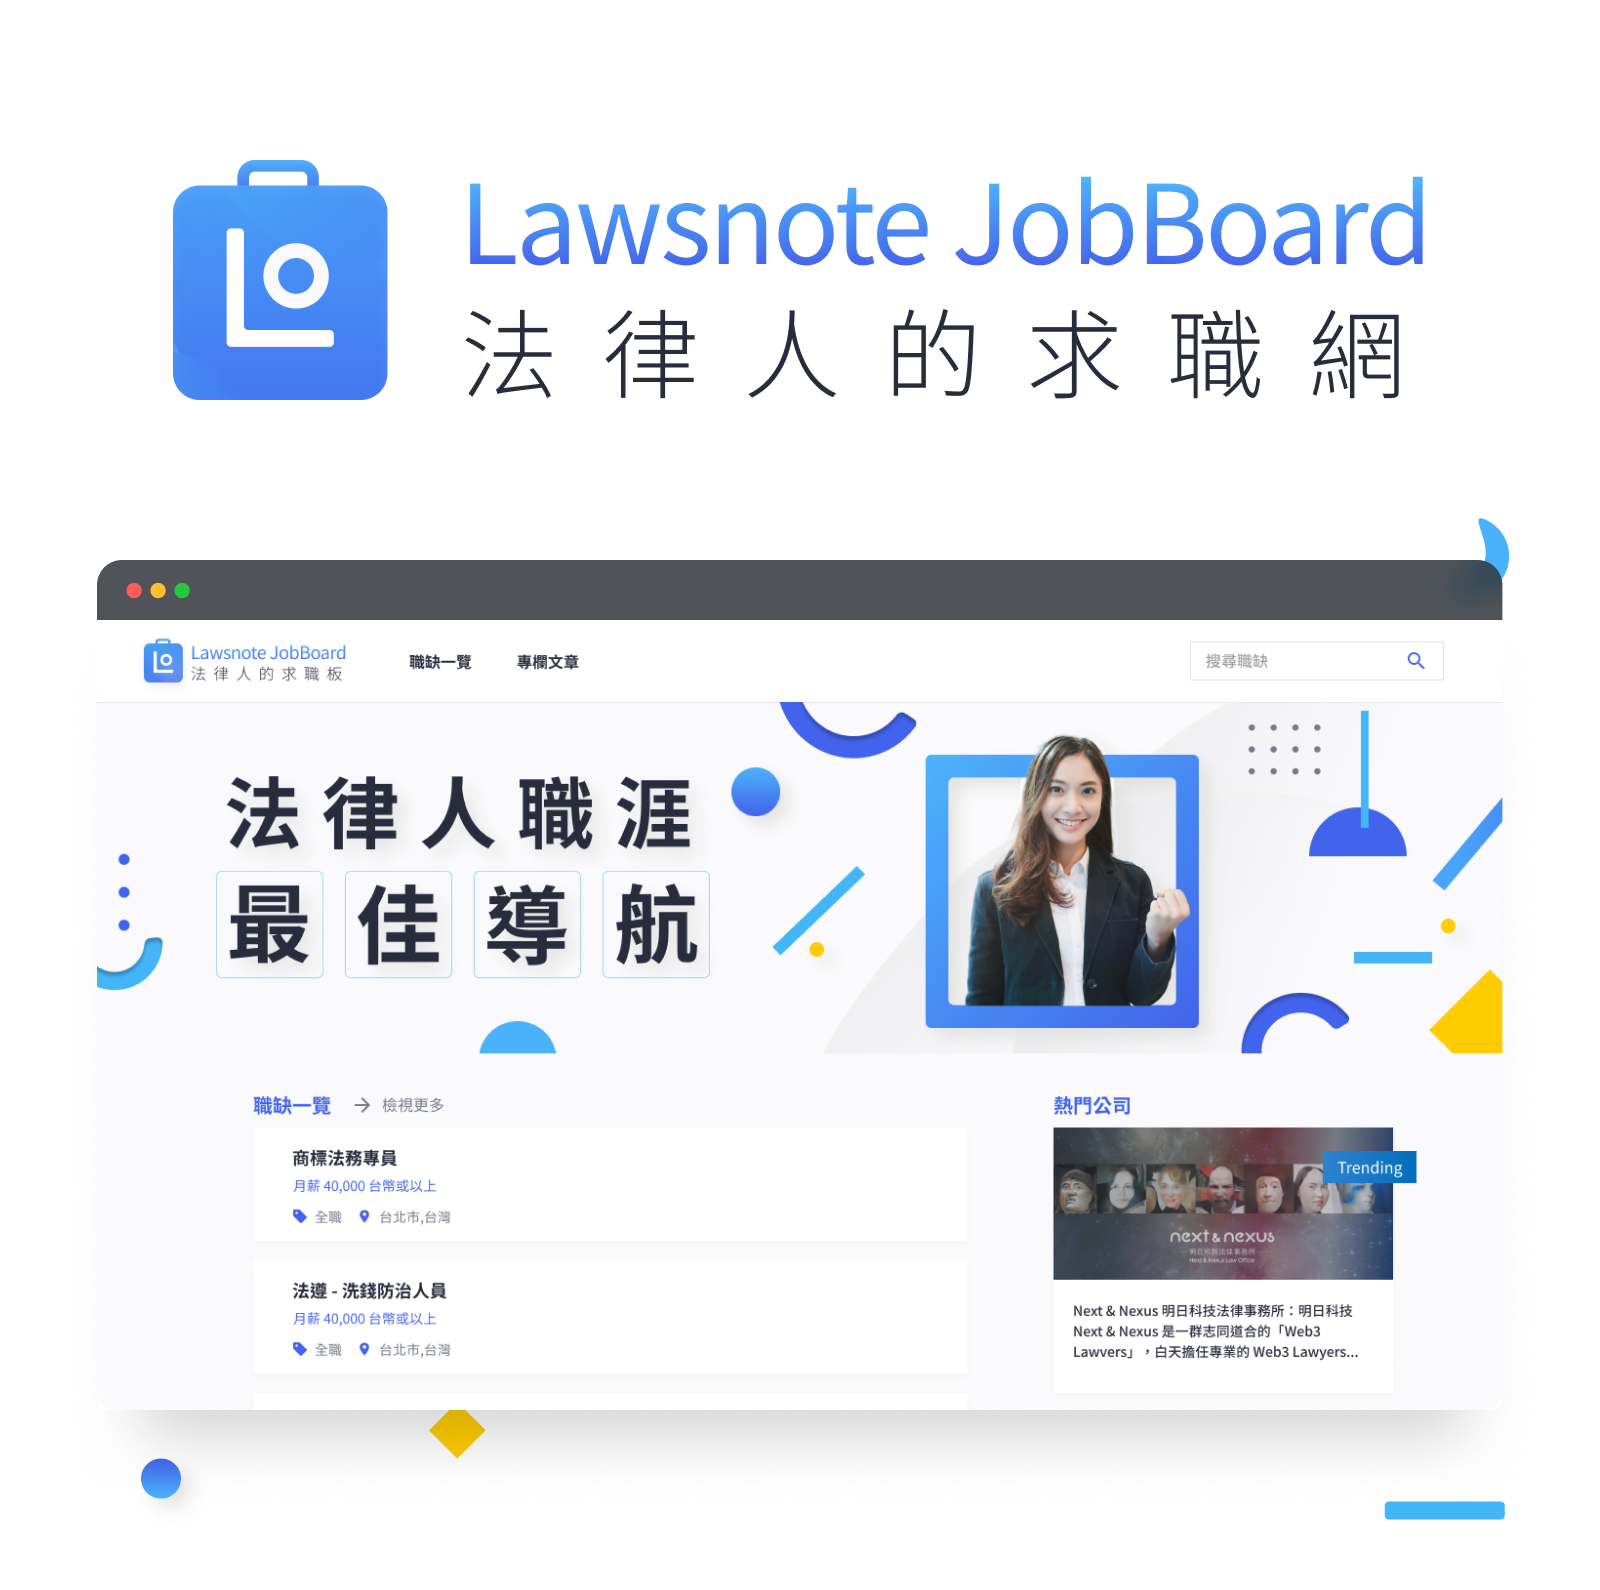 Lawsnote JobBoard 首頁